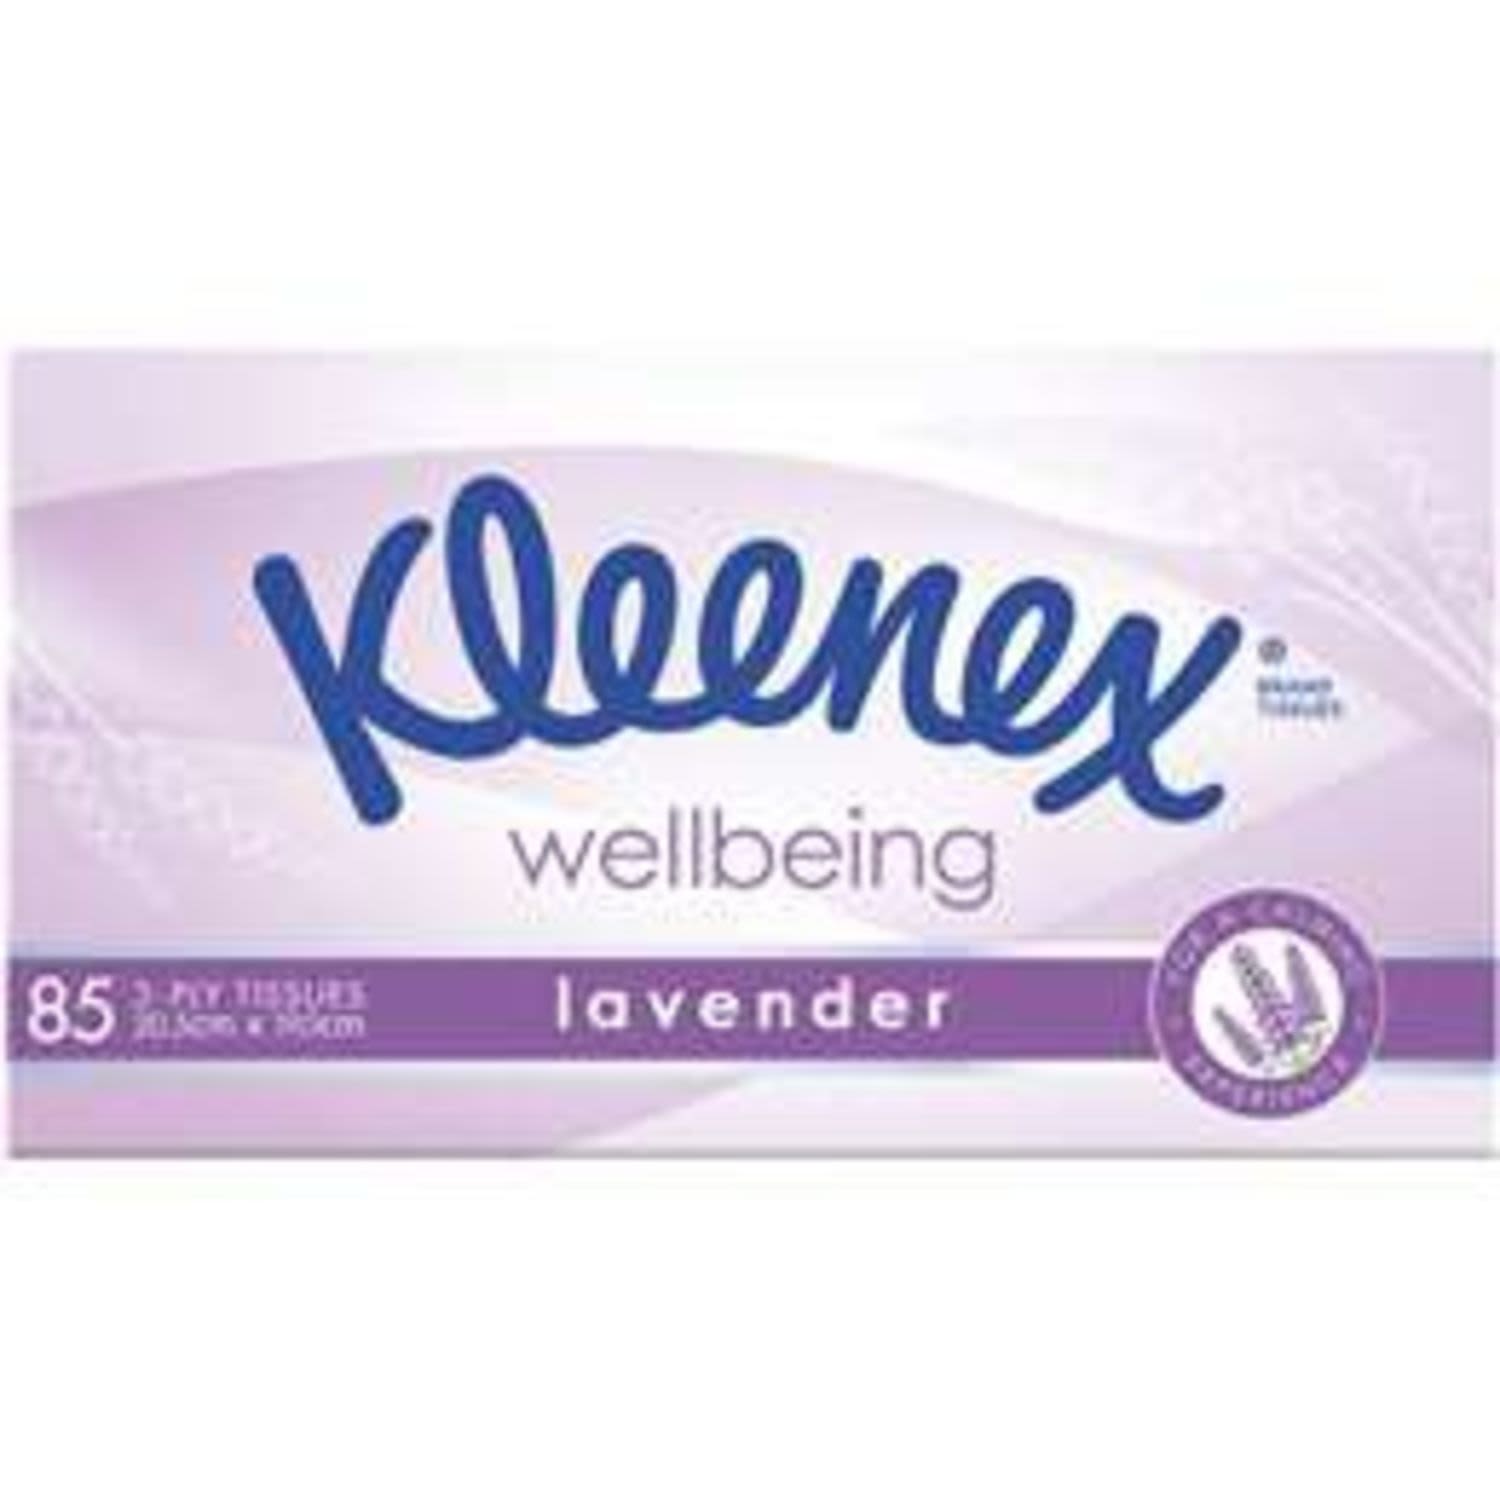 Kleenex Lavender Facial Tissues, 85 Each